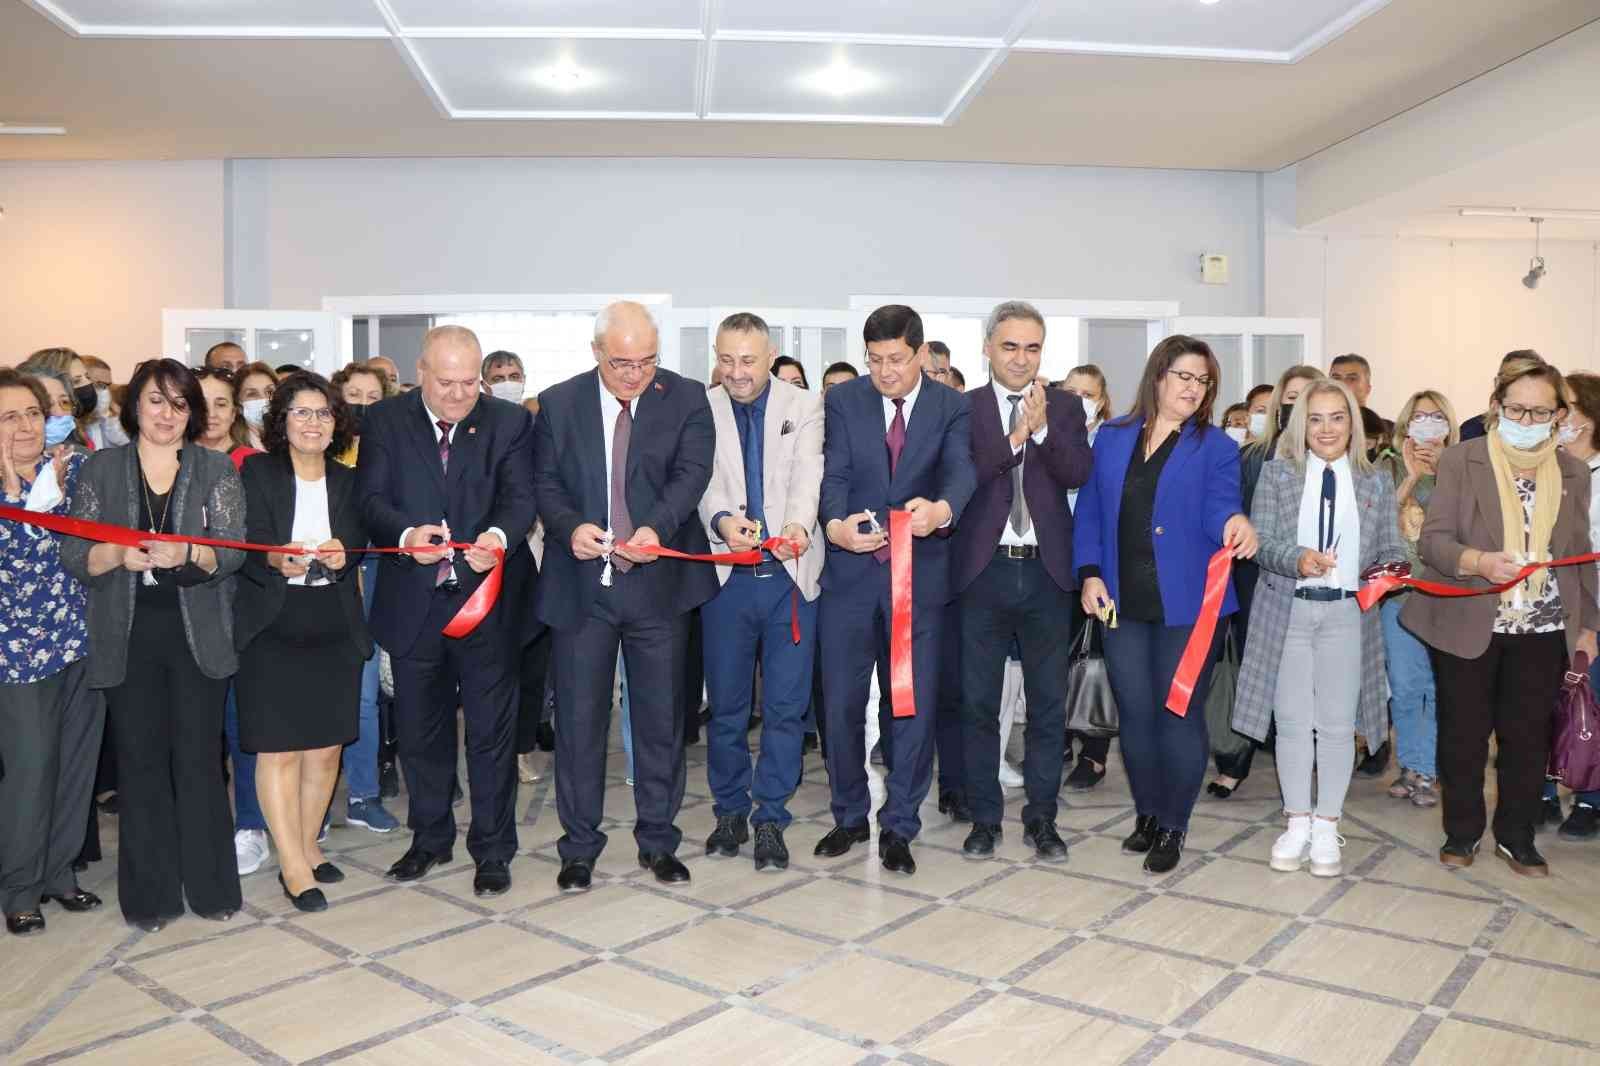 Nazilli’de ’Sümerbank Desenleri ve El Sanatları Sergisi’ açıldı #aydin